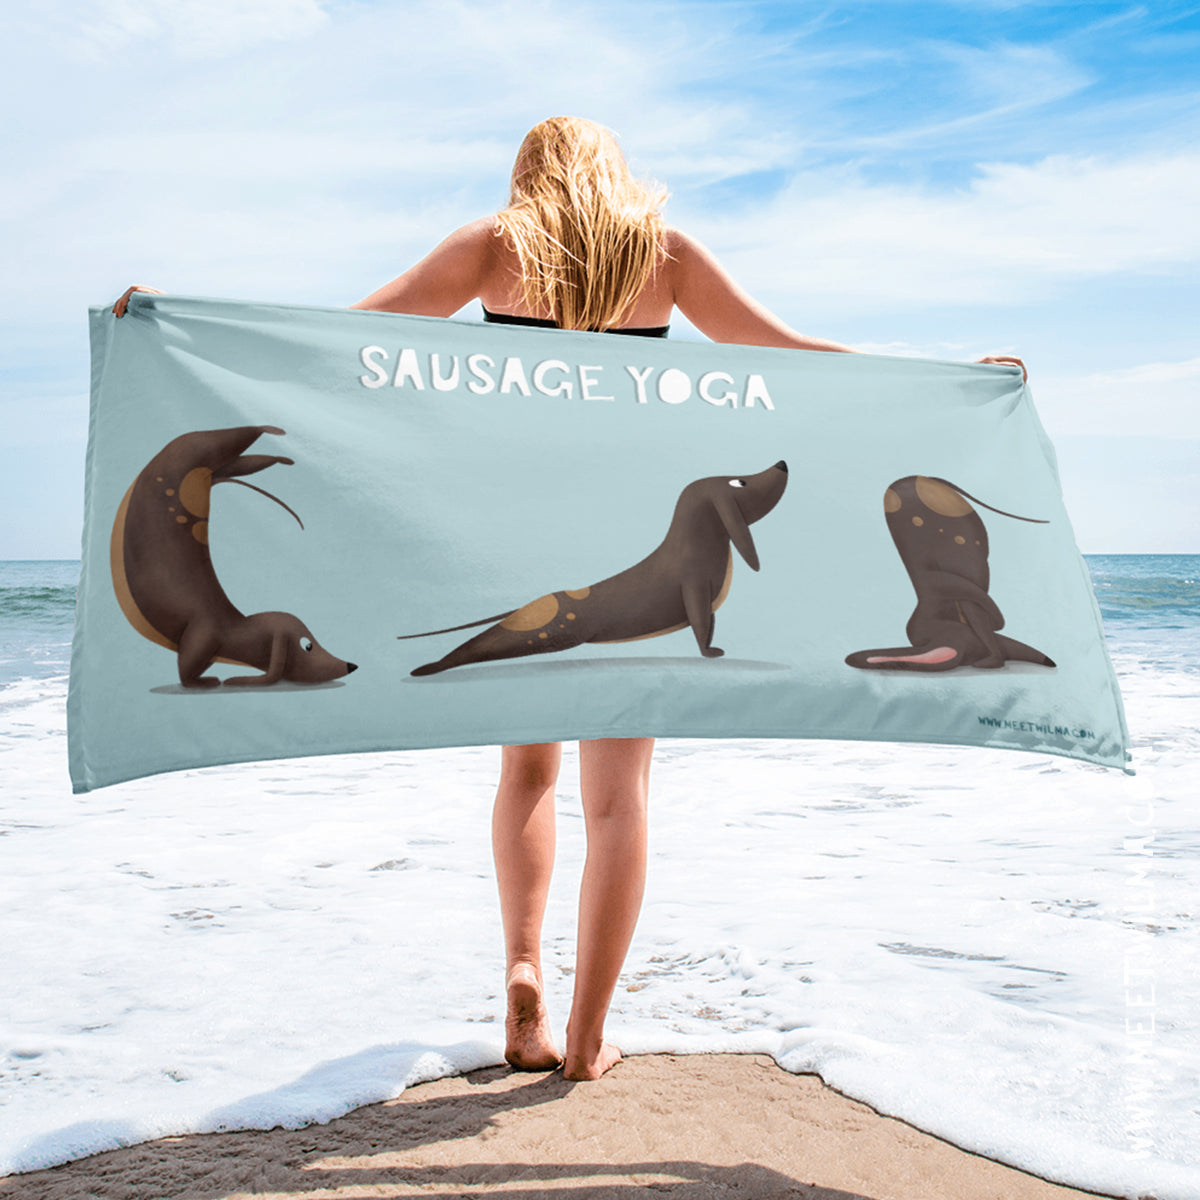 Towel "Sausage Yoga"